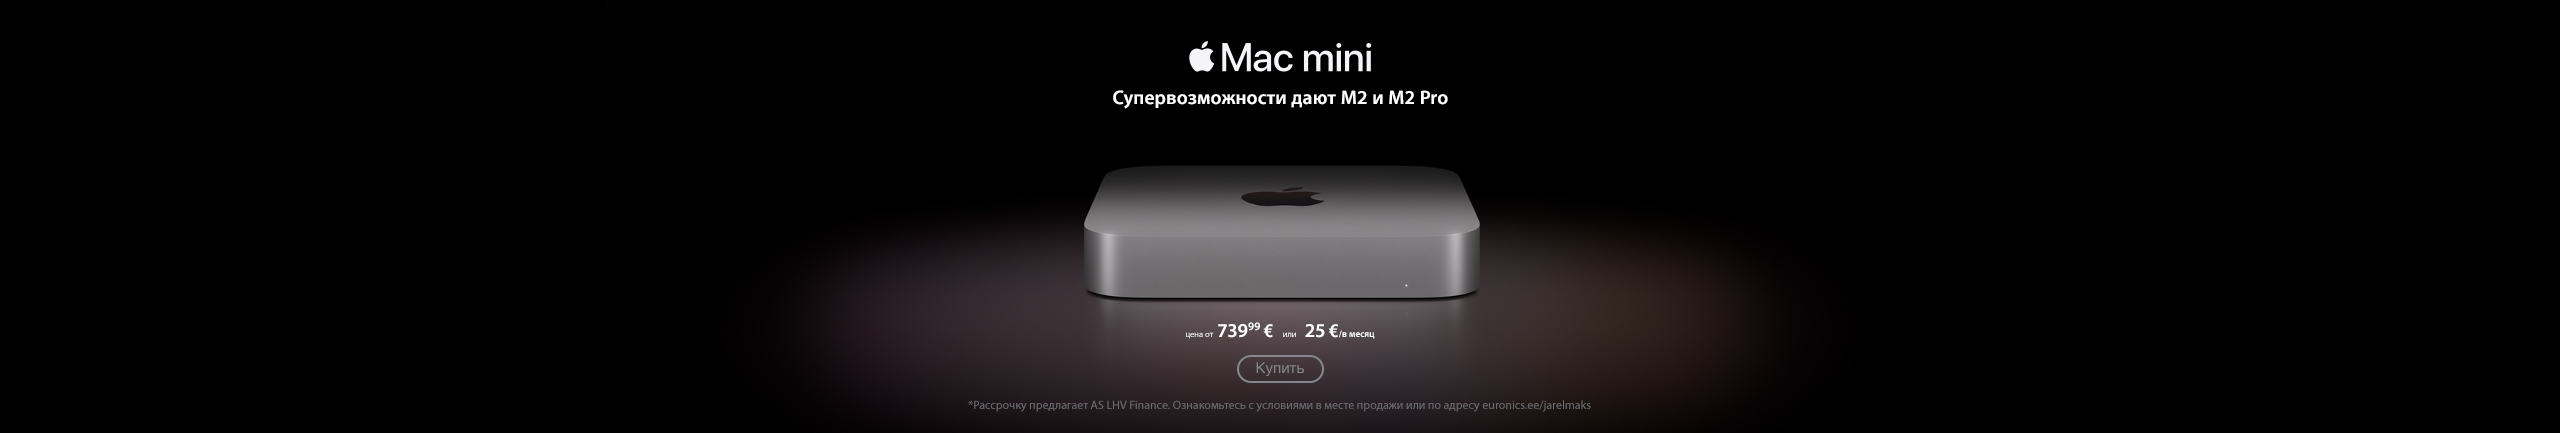 Новый Apple iMac mini уже доступен